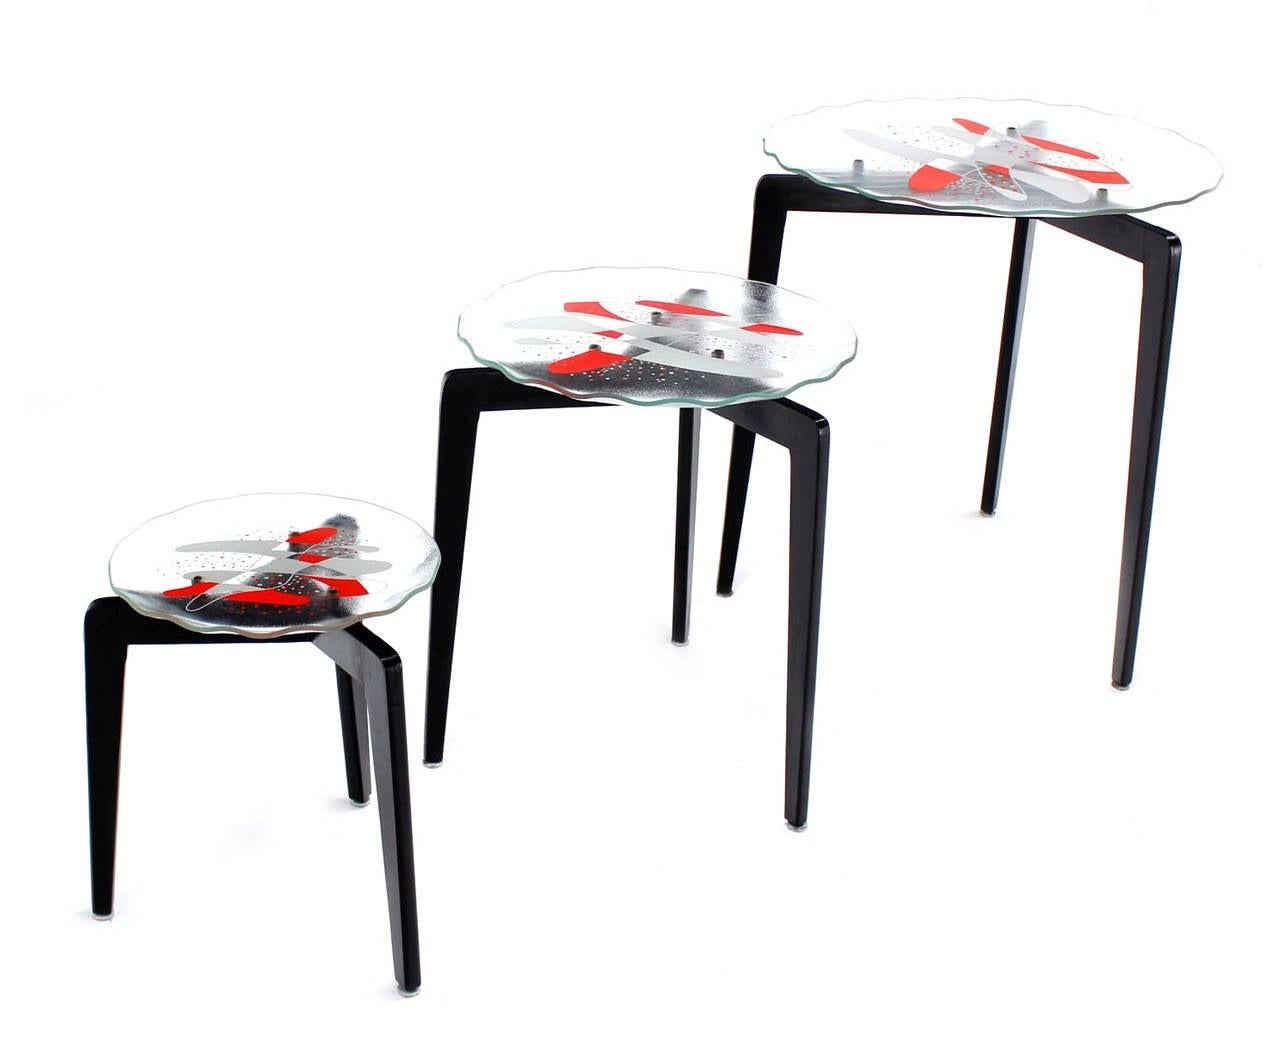 Satz von 3 Art Glas Verschachtelung Seite gelegentlich Seite Ende Tische. Schönes Design mit konischen Beinen. Schwarz lackiert. Geätzte Glasplatten mit weißem und rotem Lackmuster.